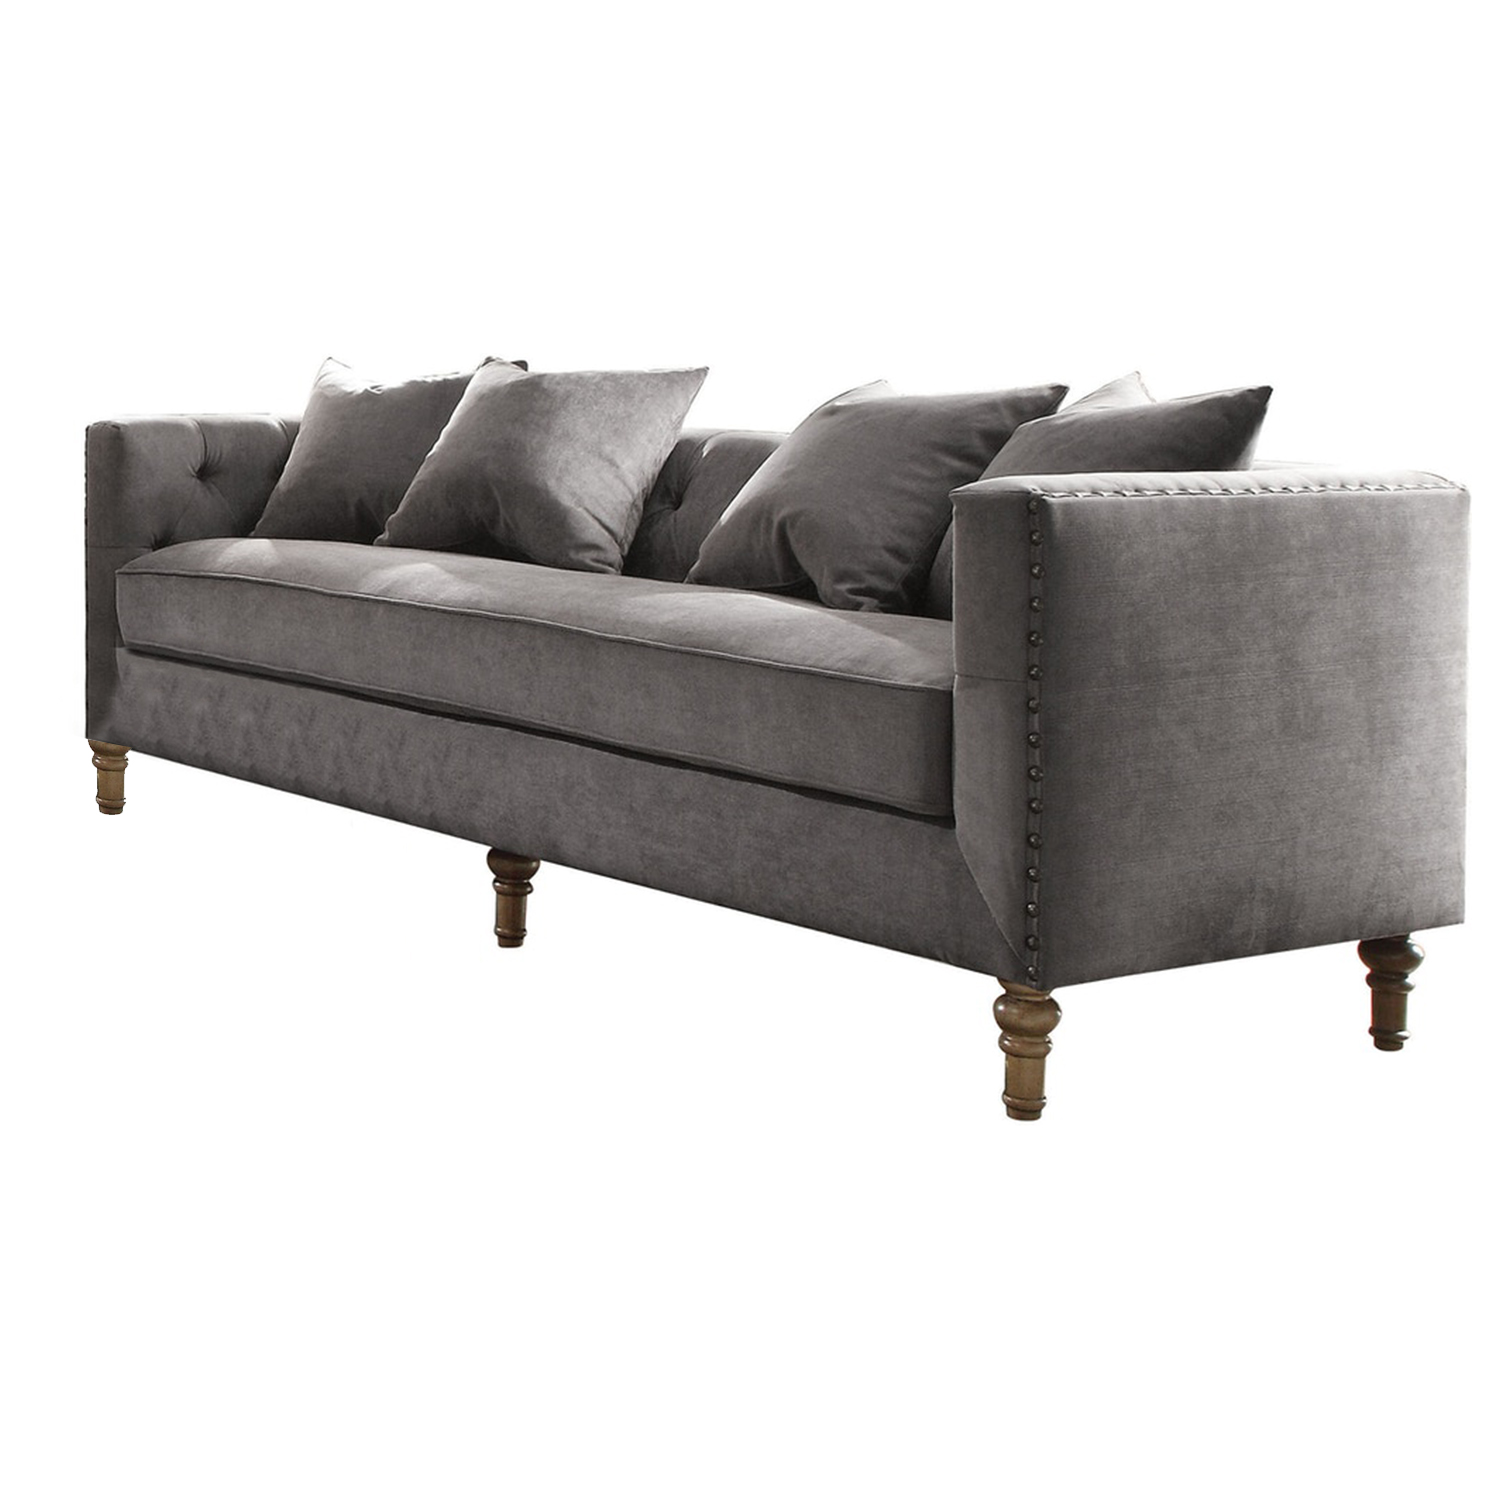 34" X 84" X 31" Gray Velvet Upholstery Sofa w/4 Pillows